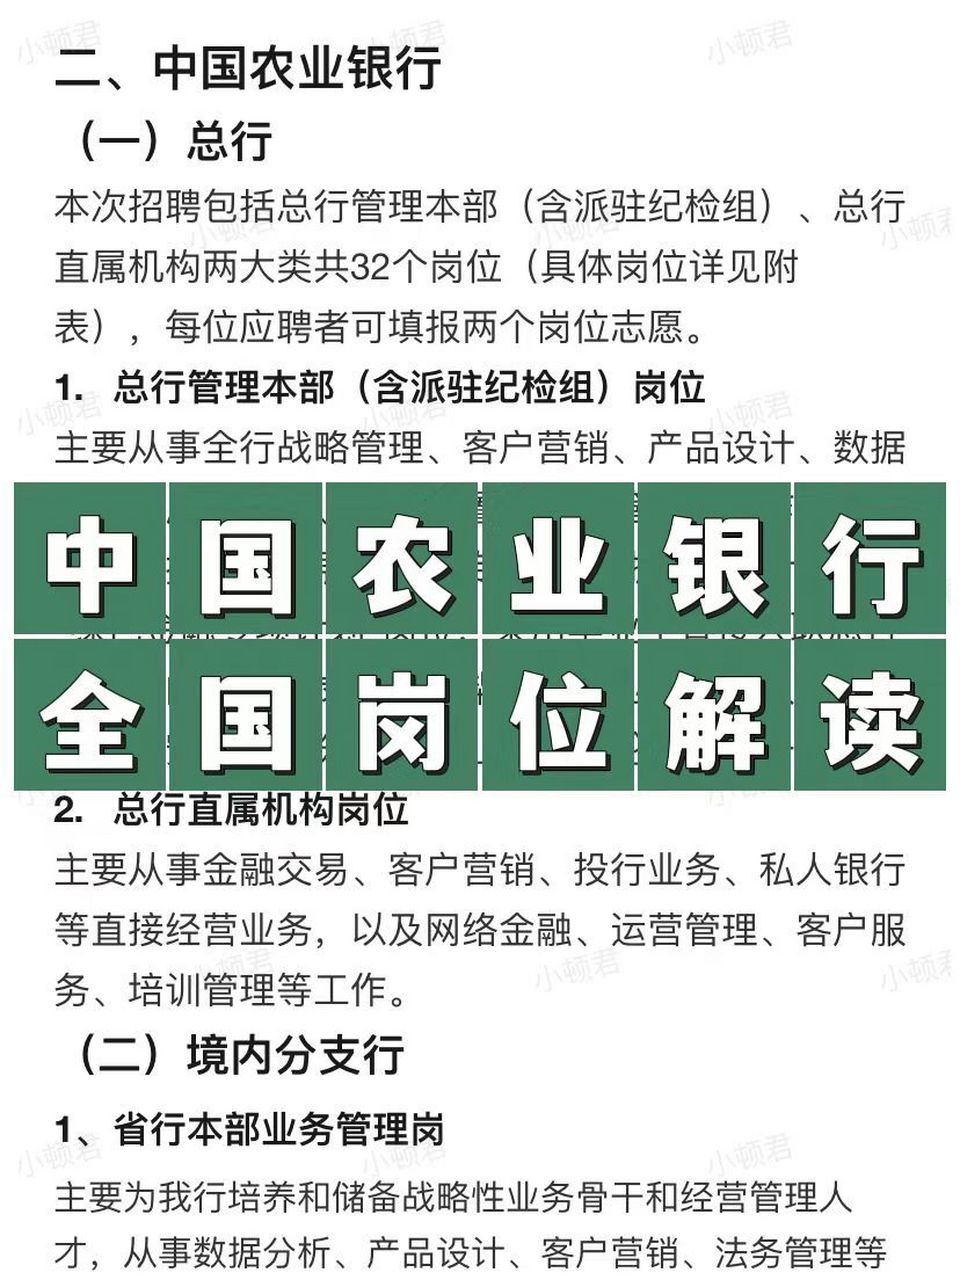 中国农业银行校招岗位一览,快来选岗啦~ 农业银行岗位分类较为细致,总